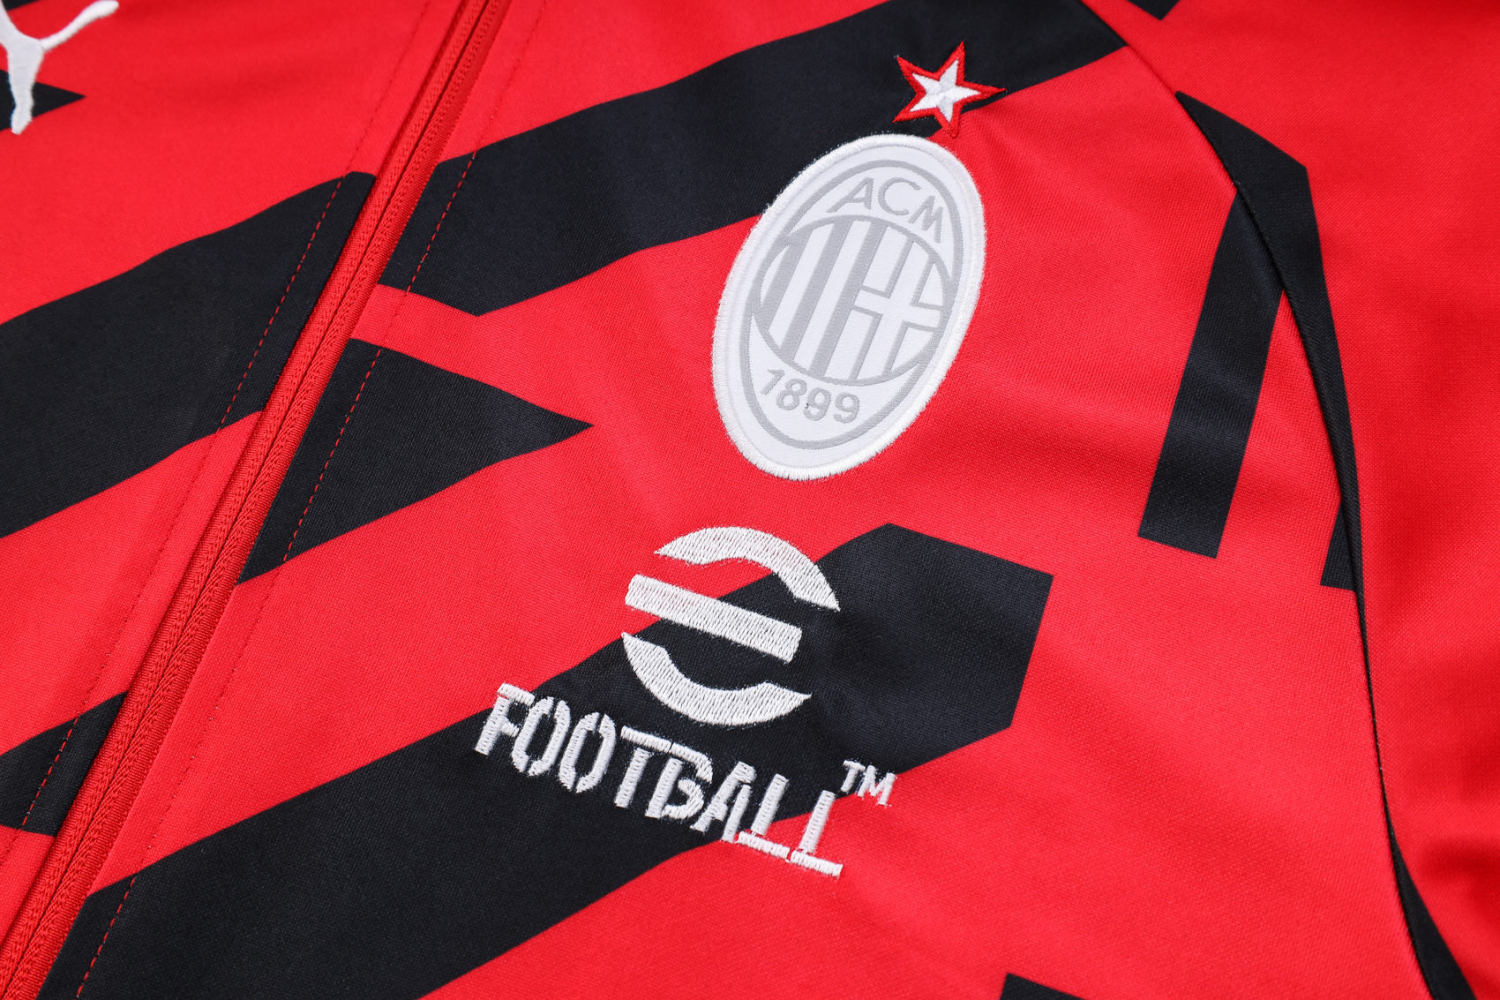 Men's AC Milan Red Training Jacket + Pants Set 22/23